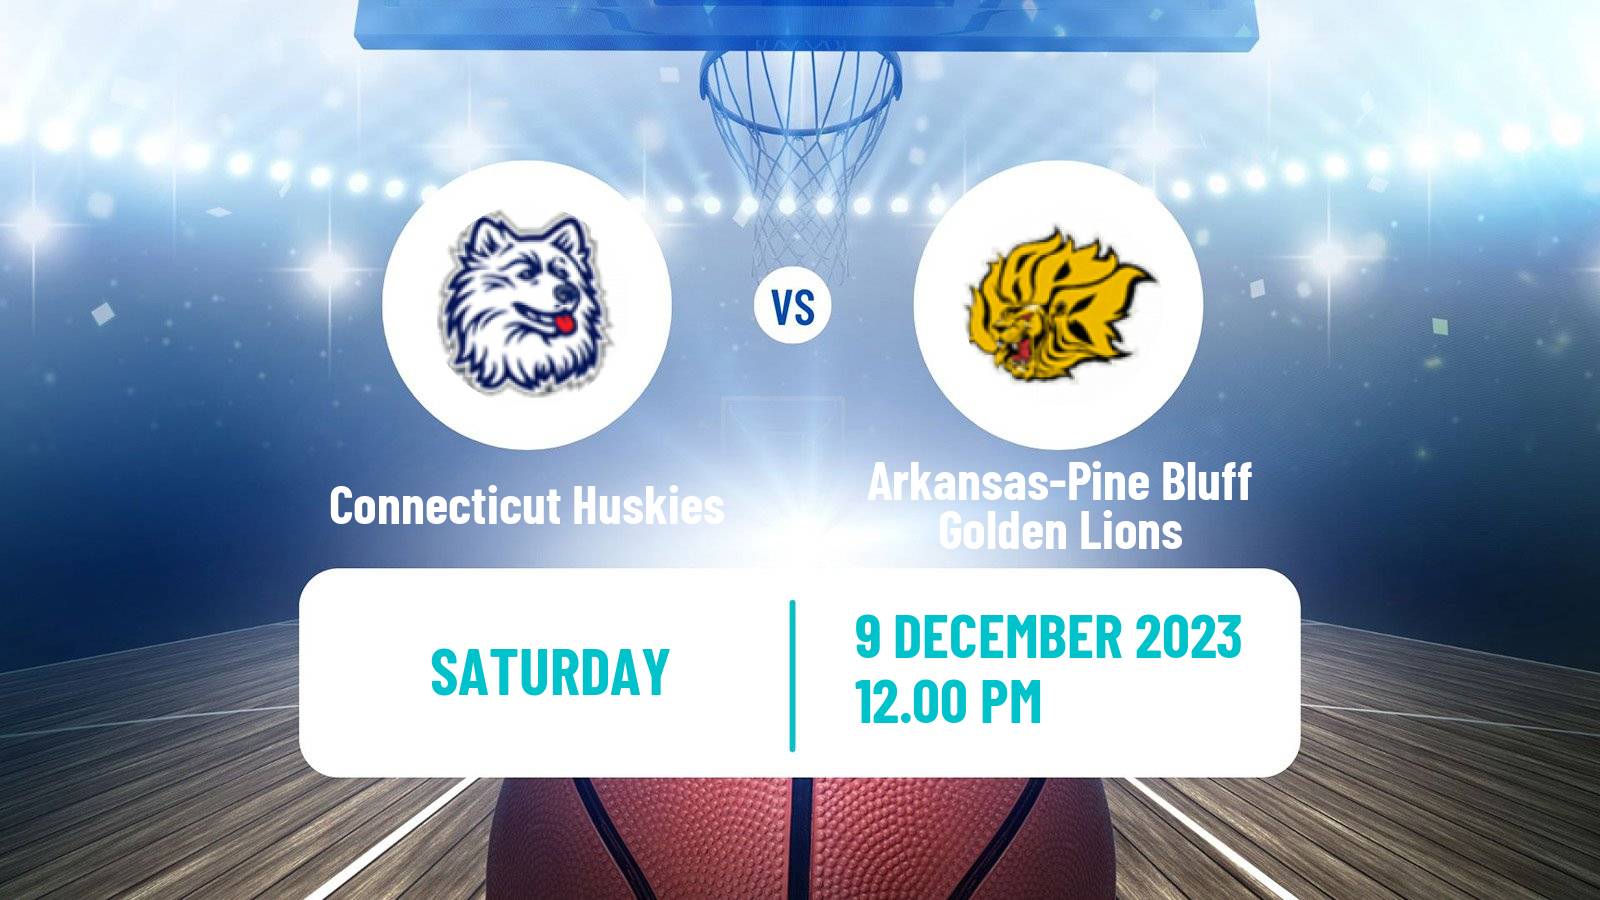 Basketball NCAA College Basketball Connecticut Huskies - Arkansas-Pine Bluff Golden Lions